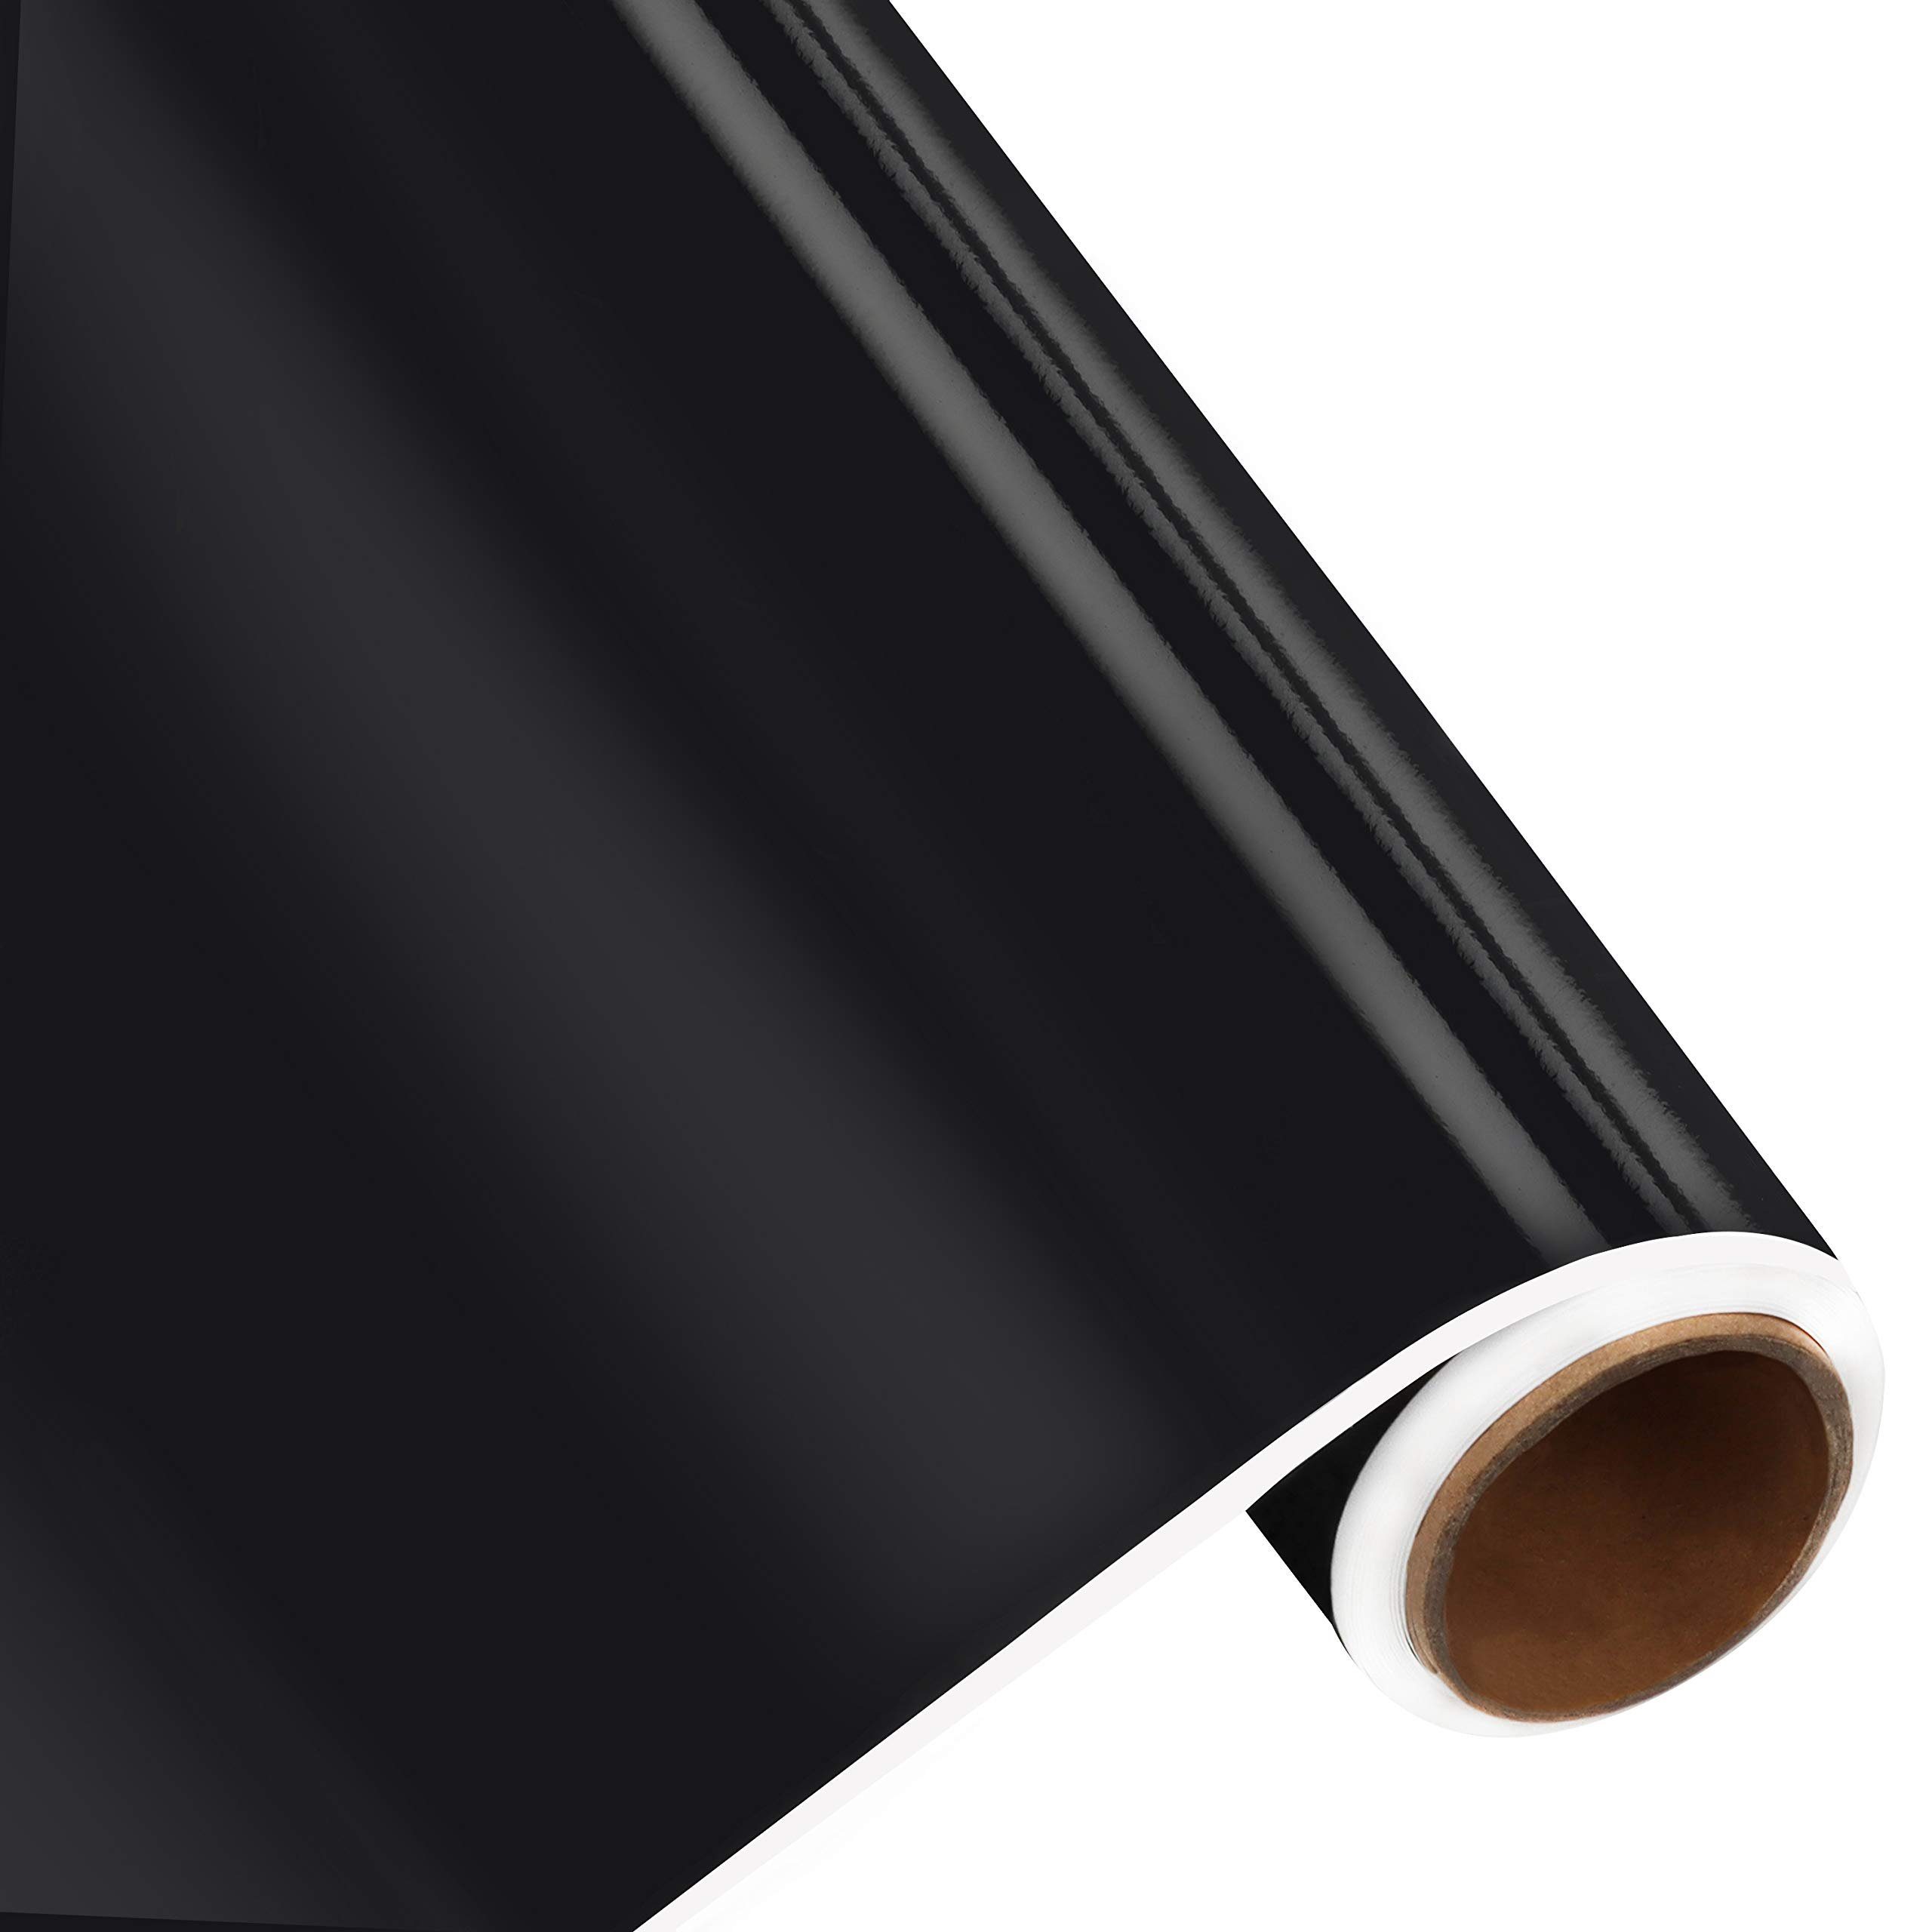 Belle Vous Schwarze Vinylfolie - 30cmx3m Rolle für vielseitige Anwendungen Pflegeset (Schwarze Vinylfolie Rolle - 30cmx3m)